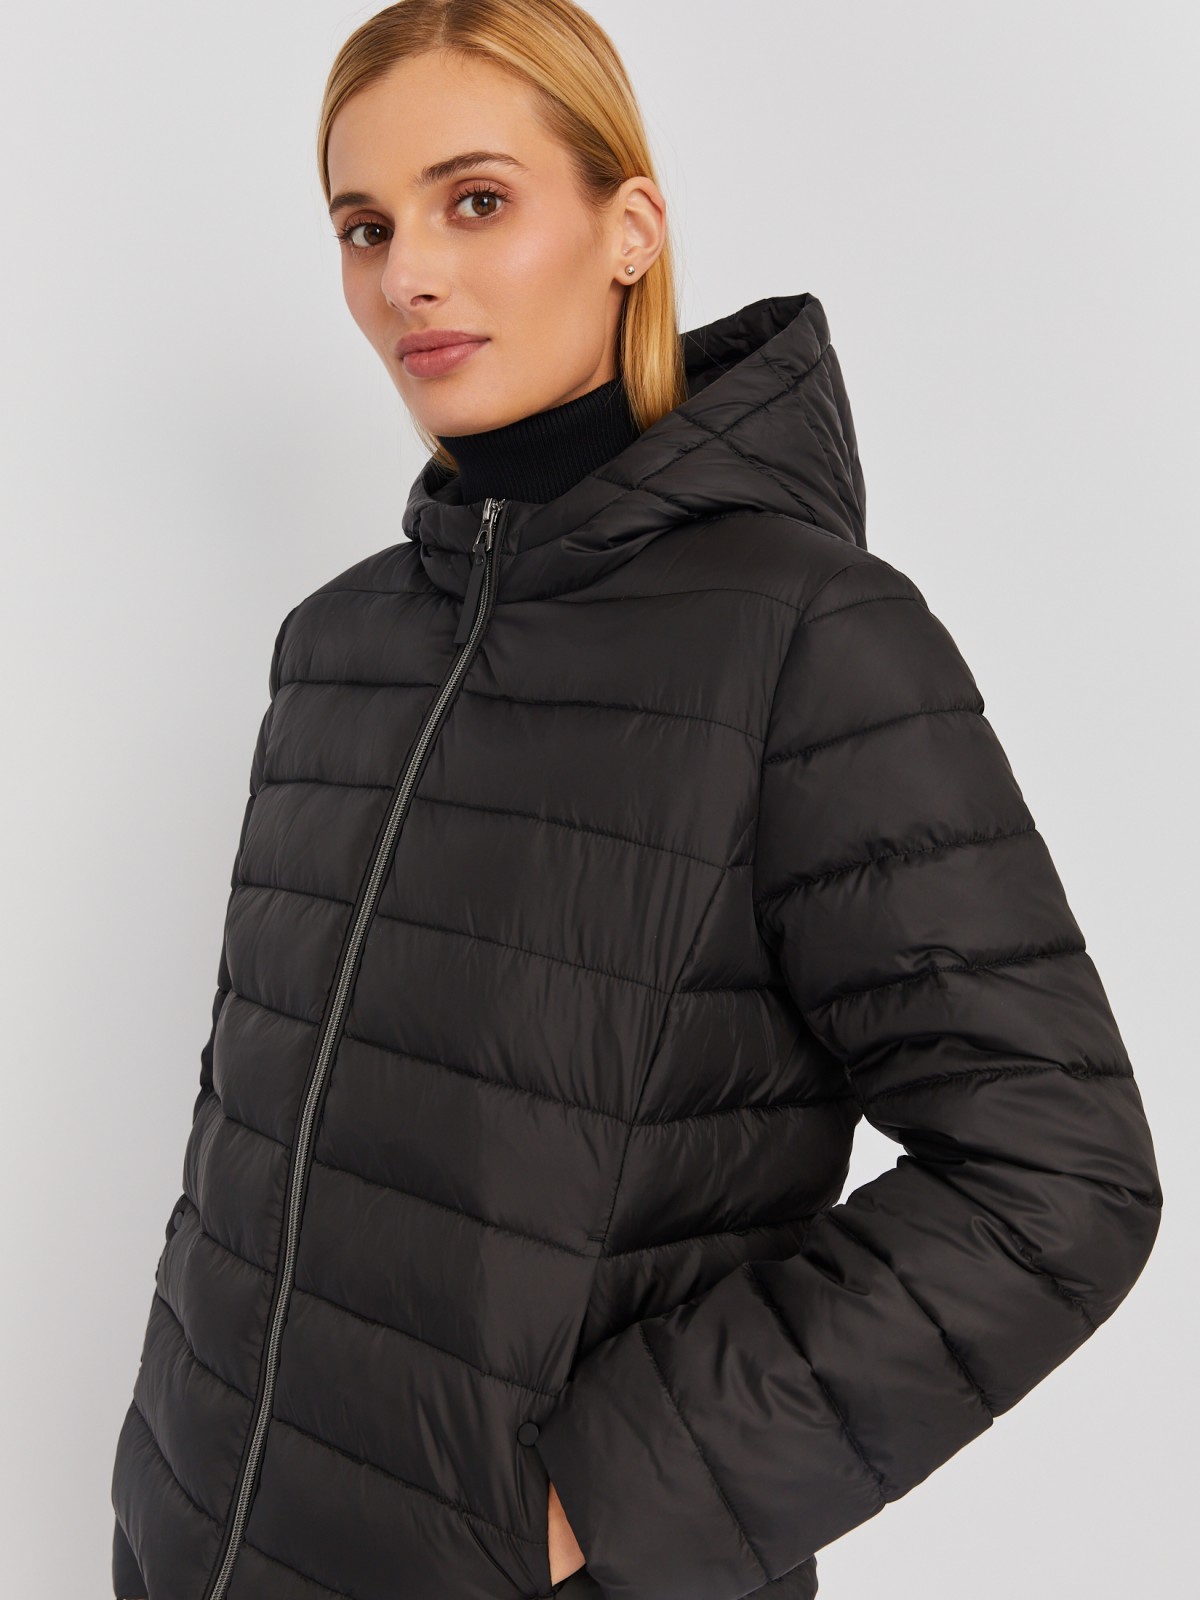 Утеплённая стёганая куртка укороченного фасона с капюшоном zolla 023335112224, цвет черный, размер S - фото 3